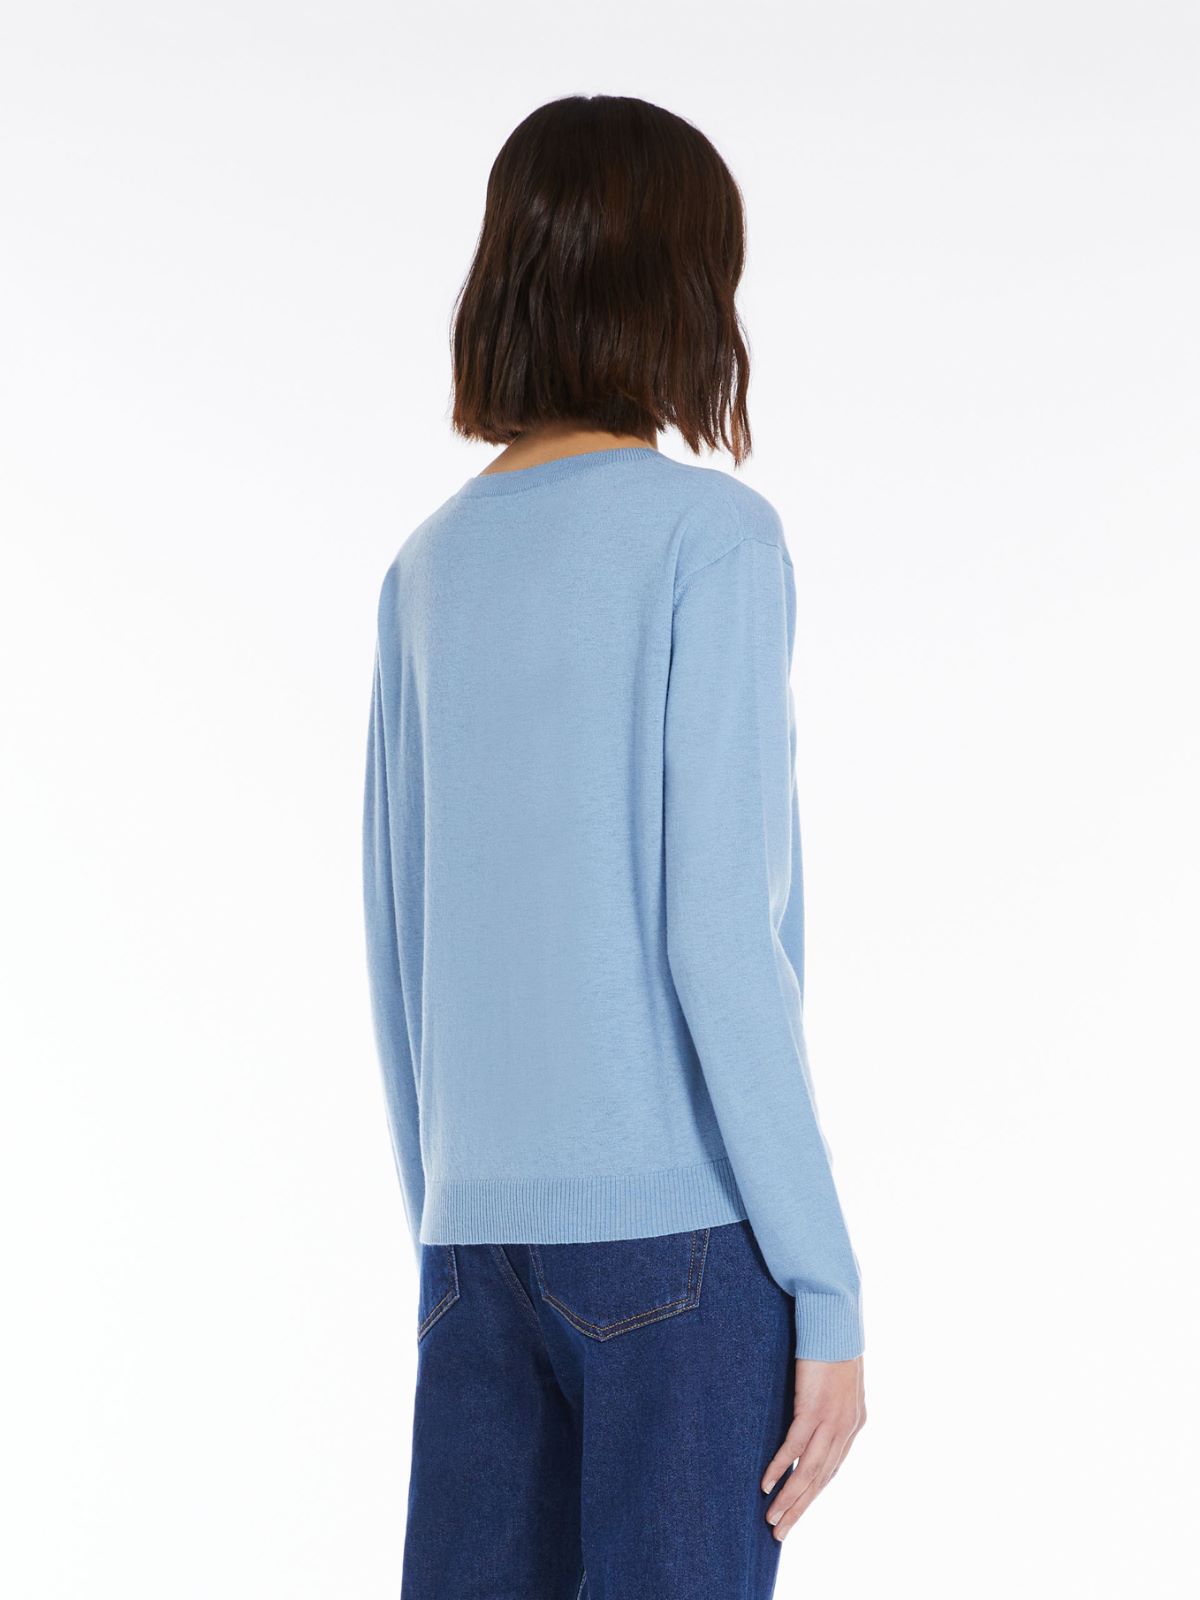 Cashmere-blend sweater - LIGHT BLUE - Weekend Max Mara - 3